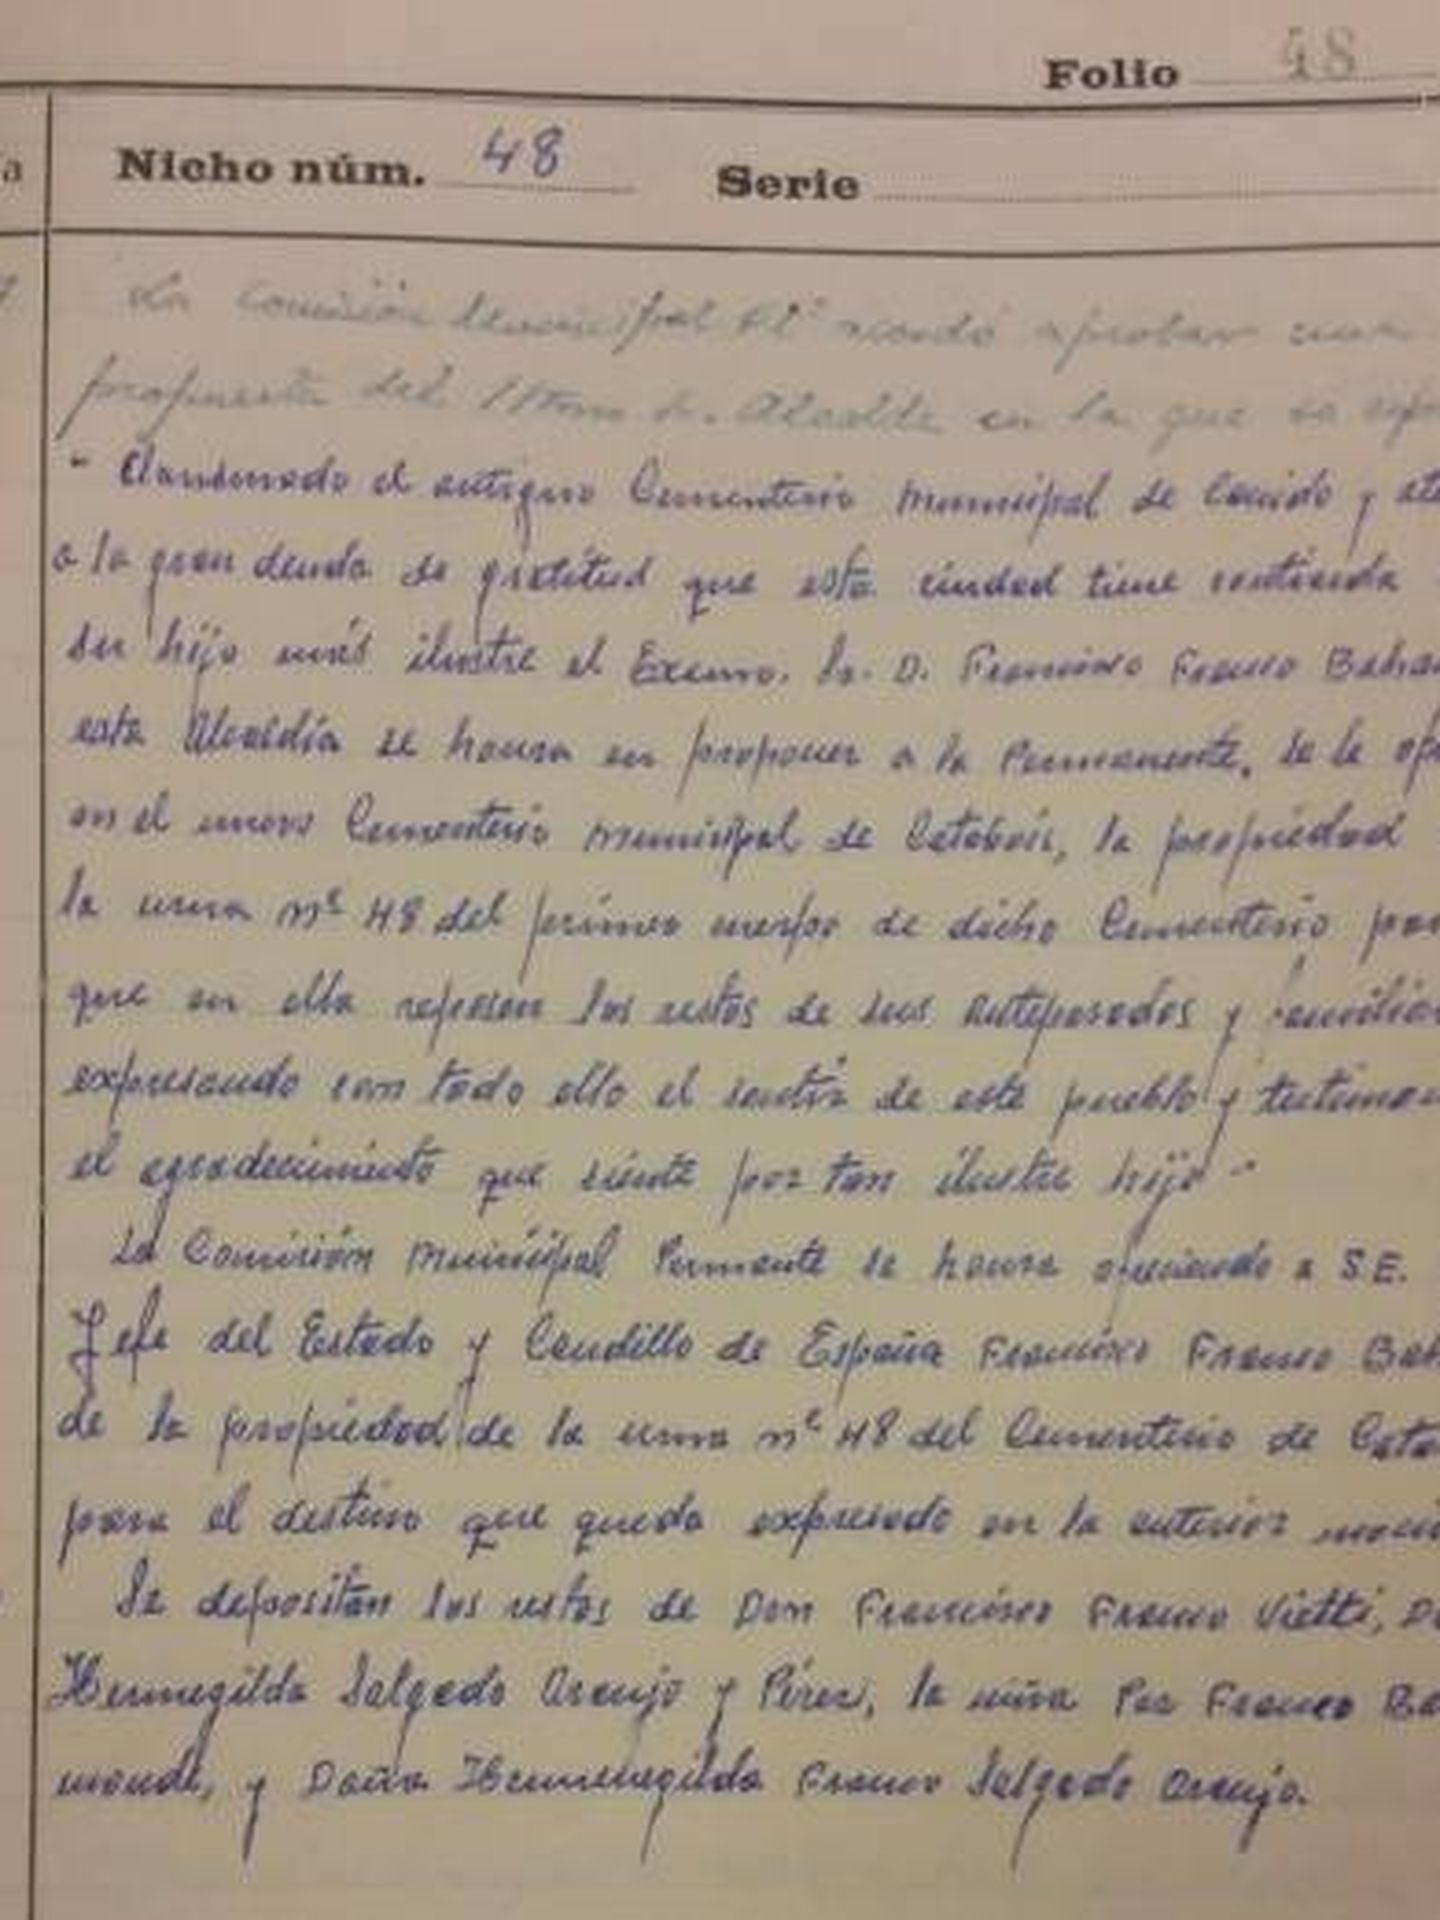 El documento de 1967 por el que se regala el nicho a Francisco Franco